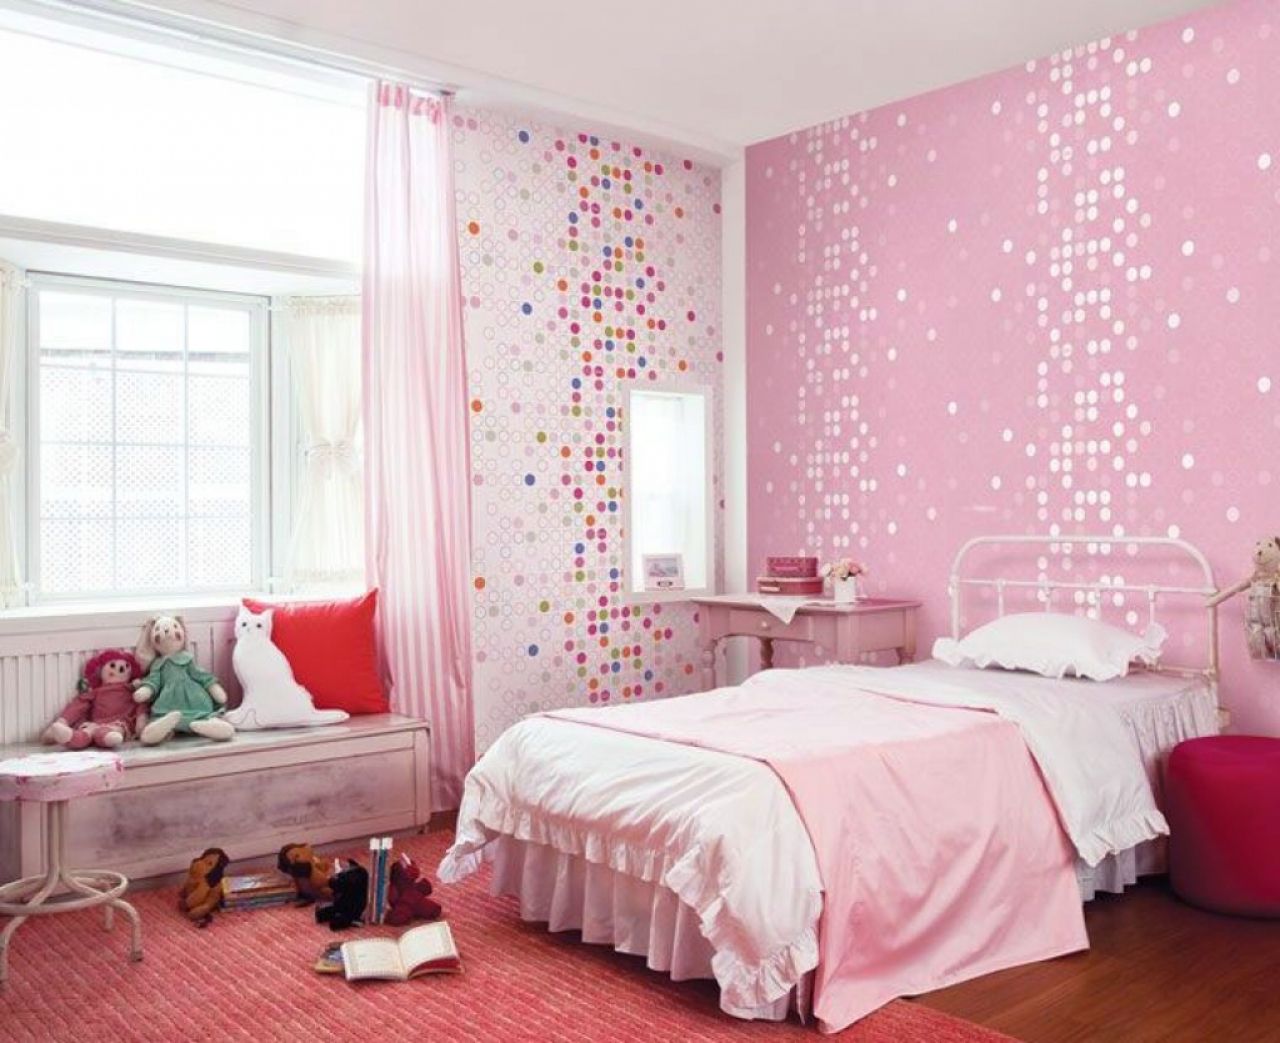 Căn phòng ngủ trang trí với giấy dán tường màu hồng